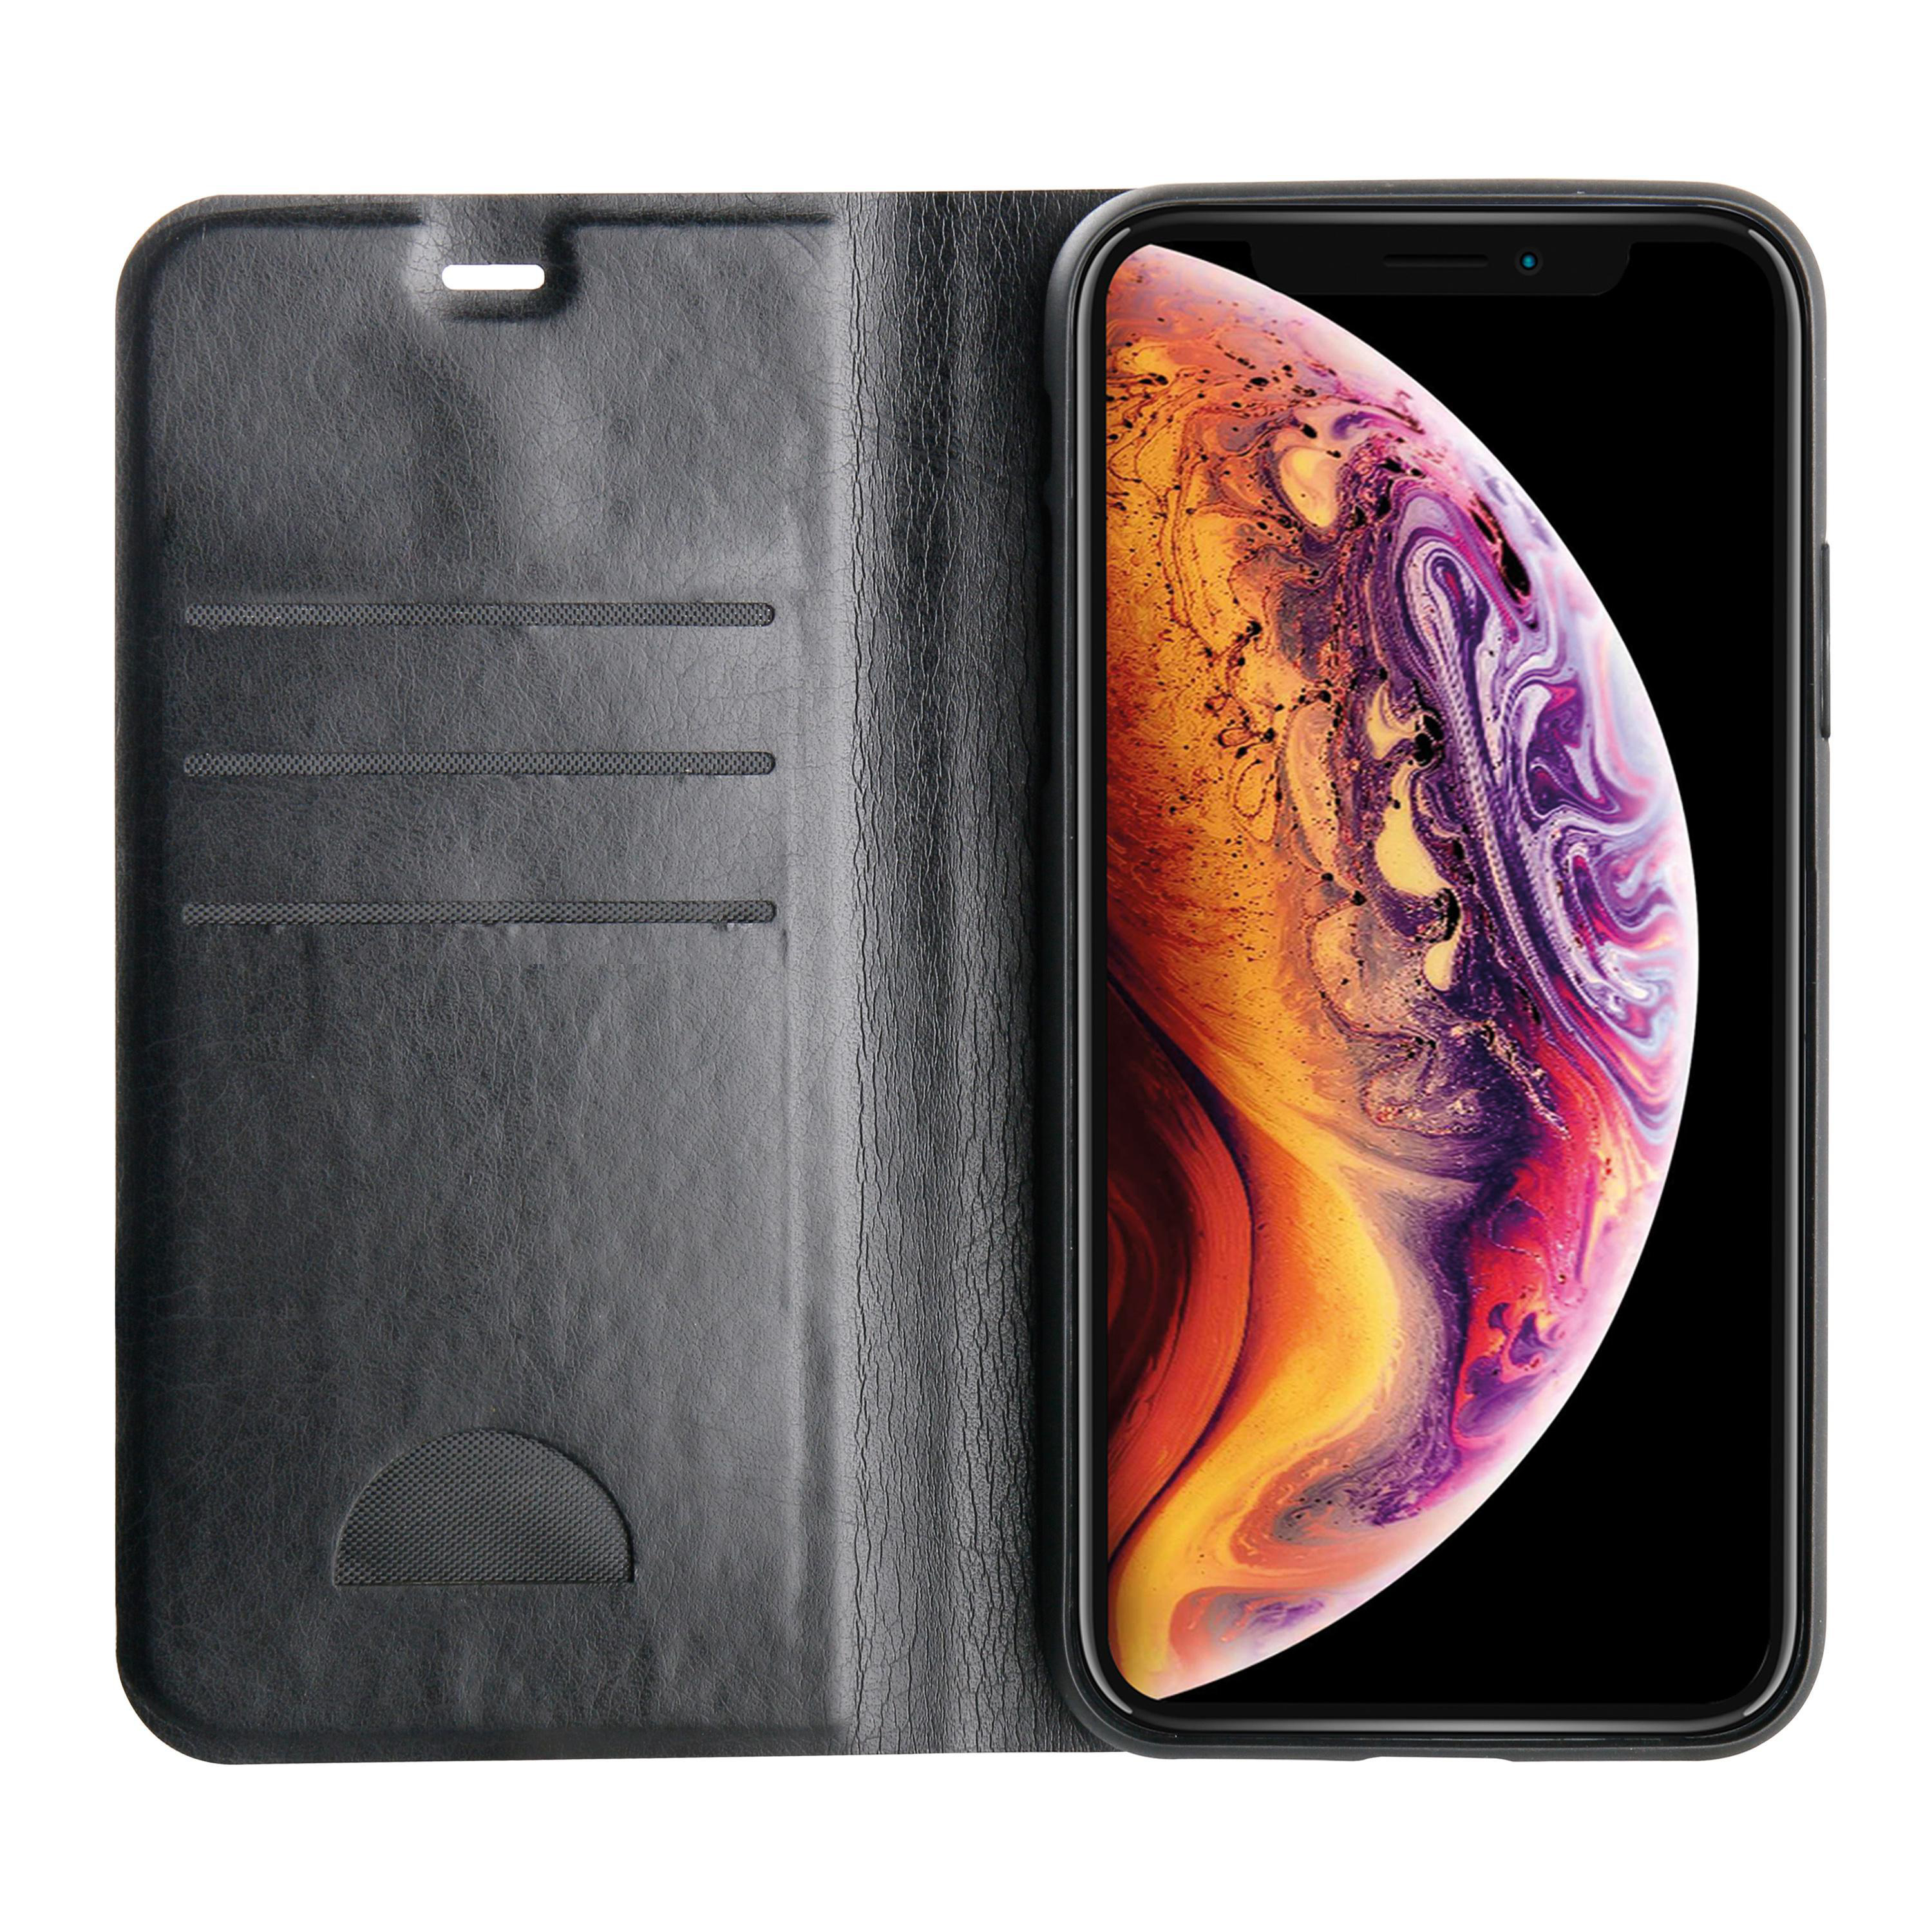 Apple, iPhone VIVANCO Bookcover, Wallet, Schwarz Premium XS Max,